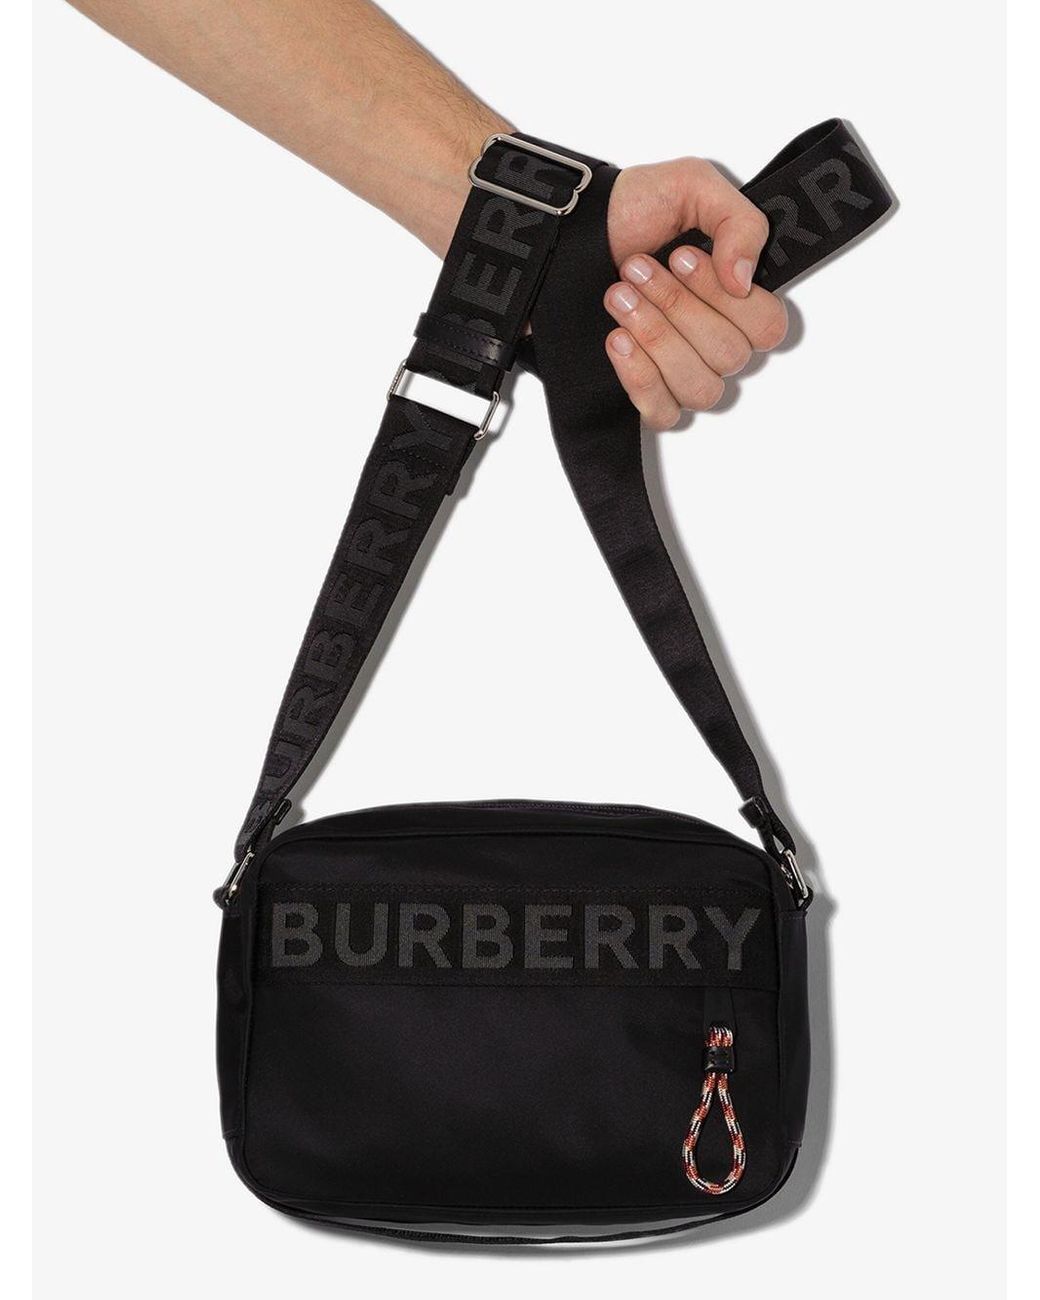 Actualizar 47+ imagen burberry logo crossbody bag